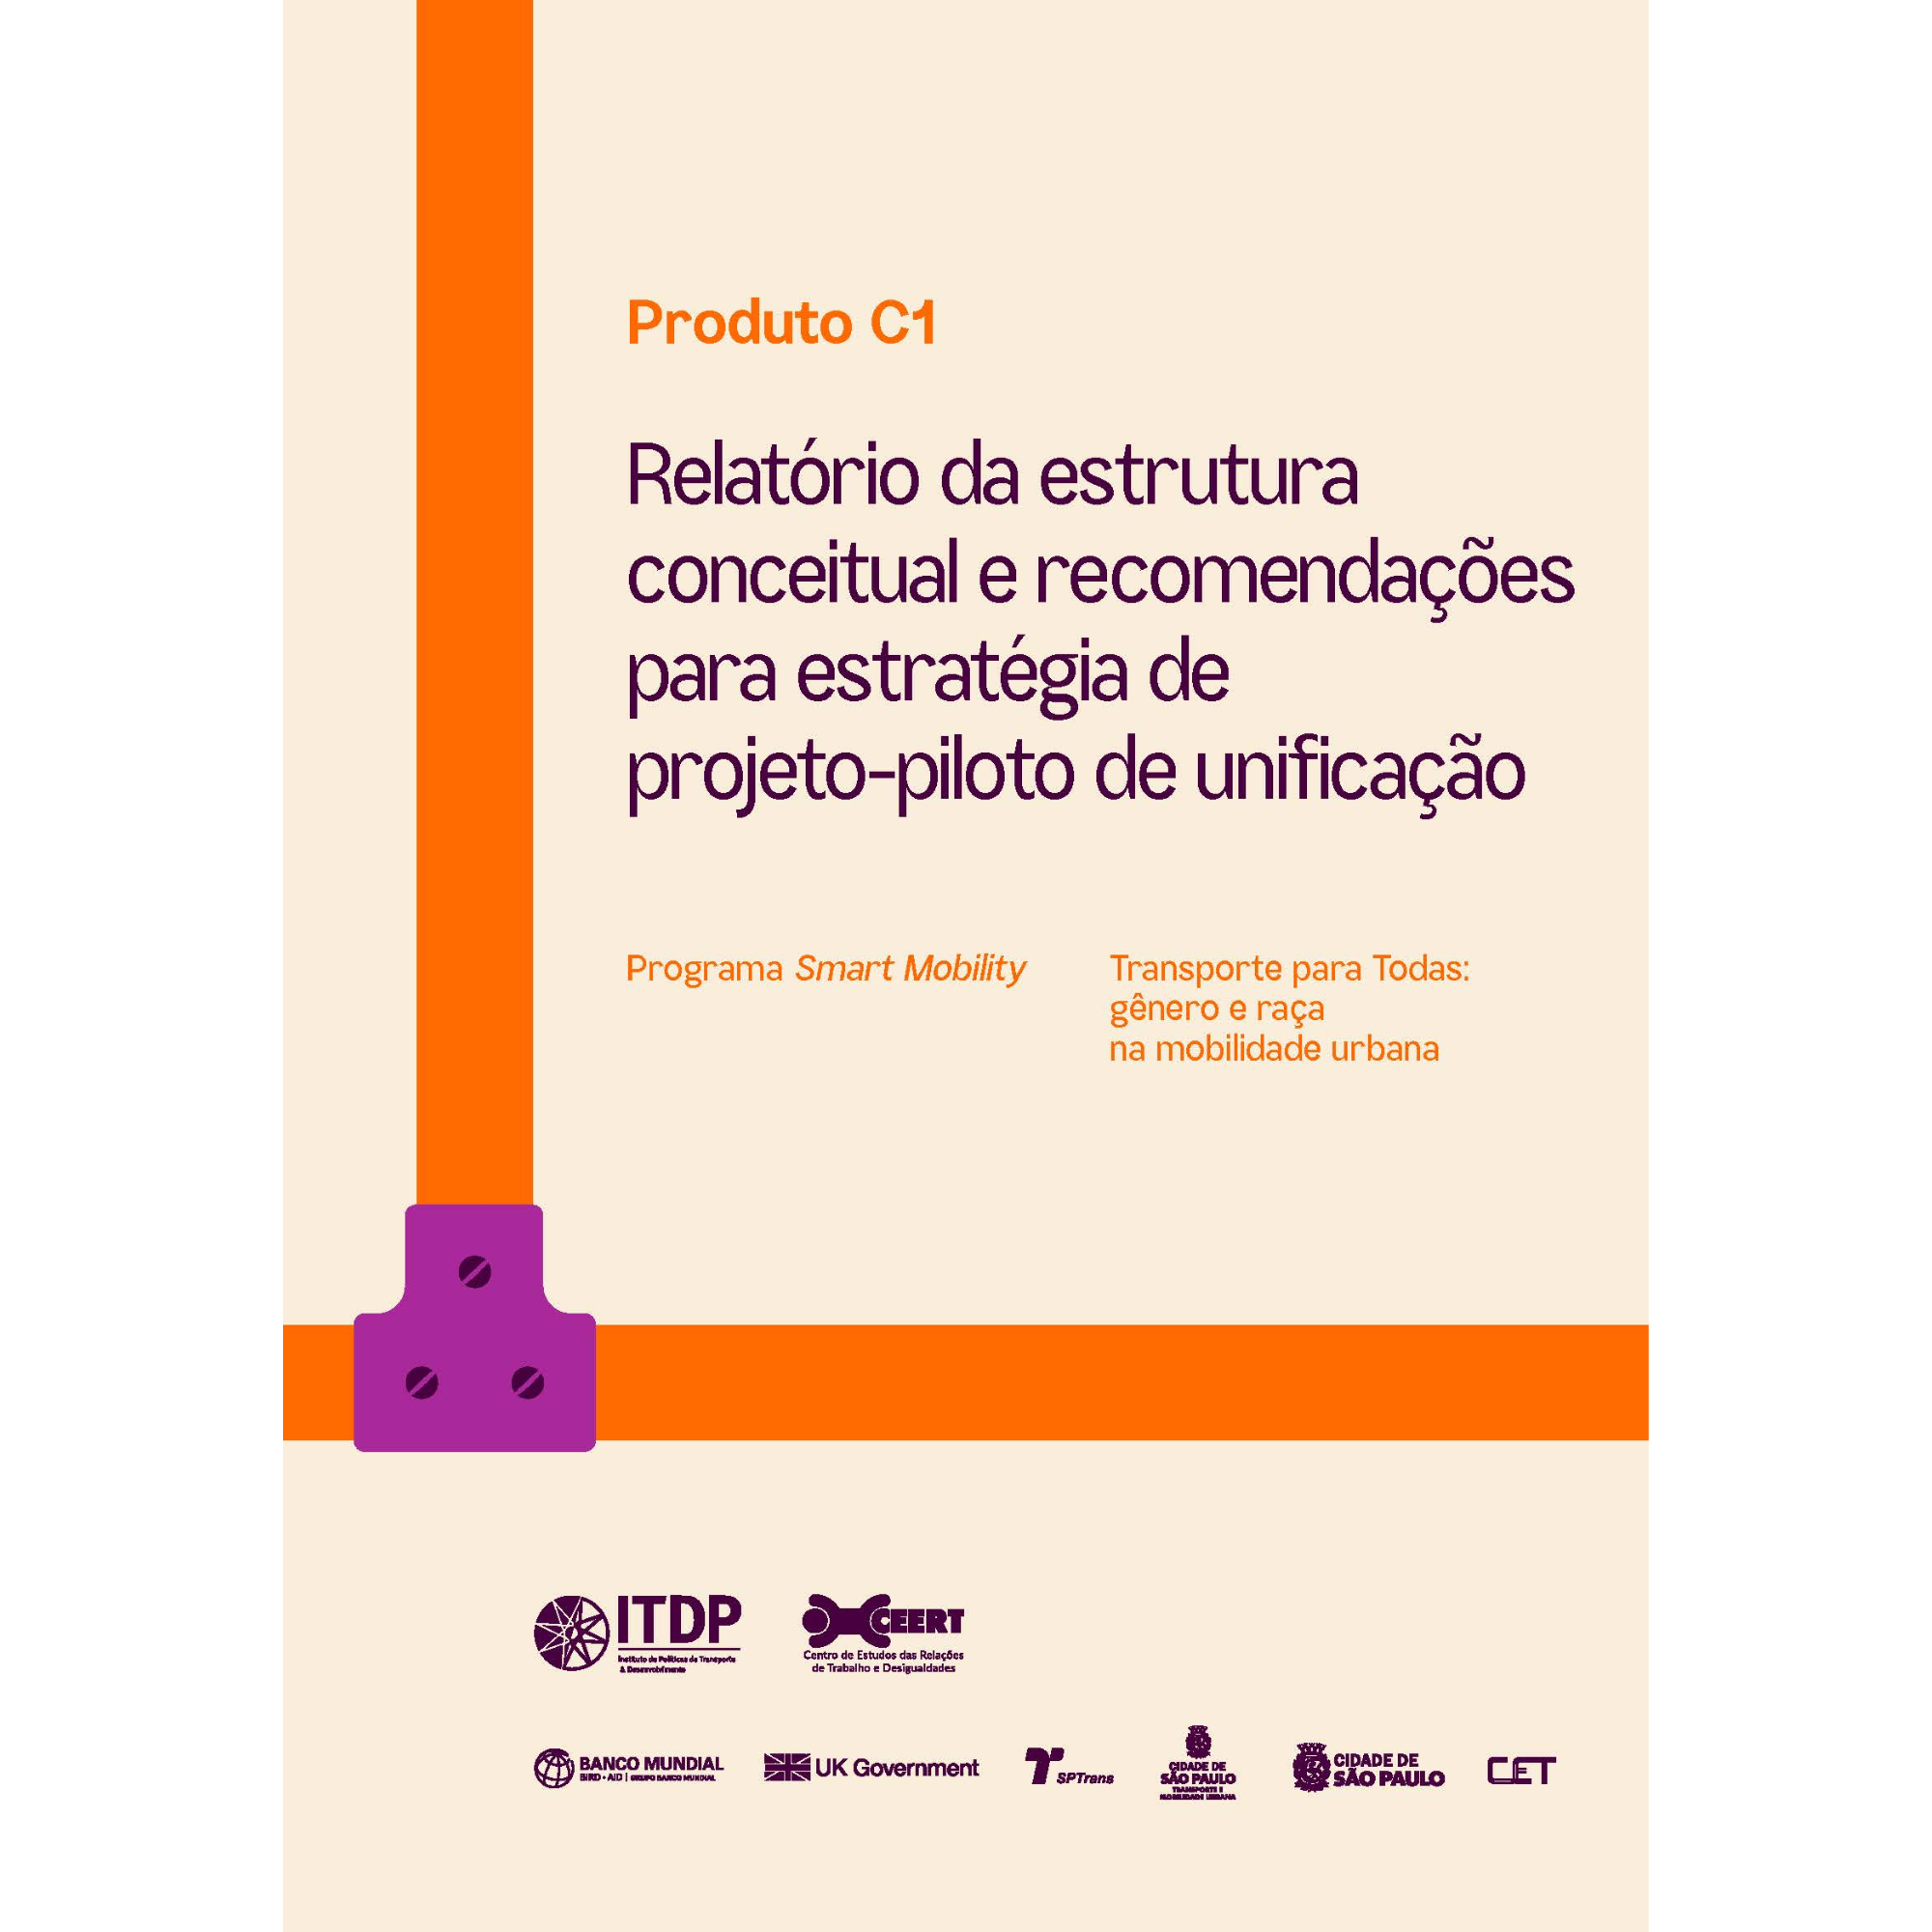 Transporte para Todas: Relatório da estrutura conceitual e recomendações para estratégia de projeto-piloto de unificação